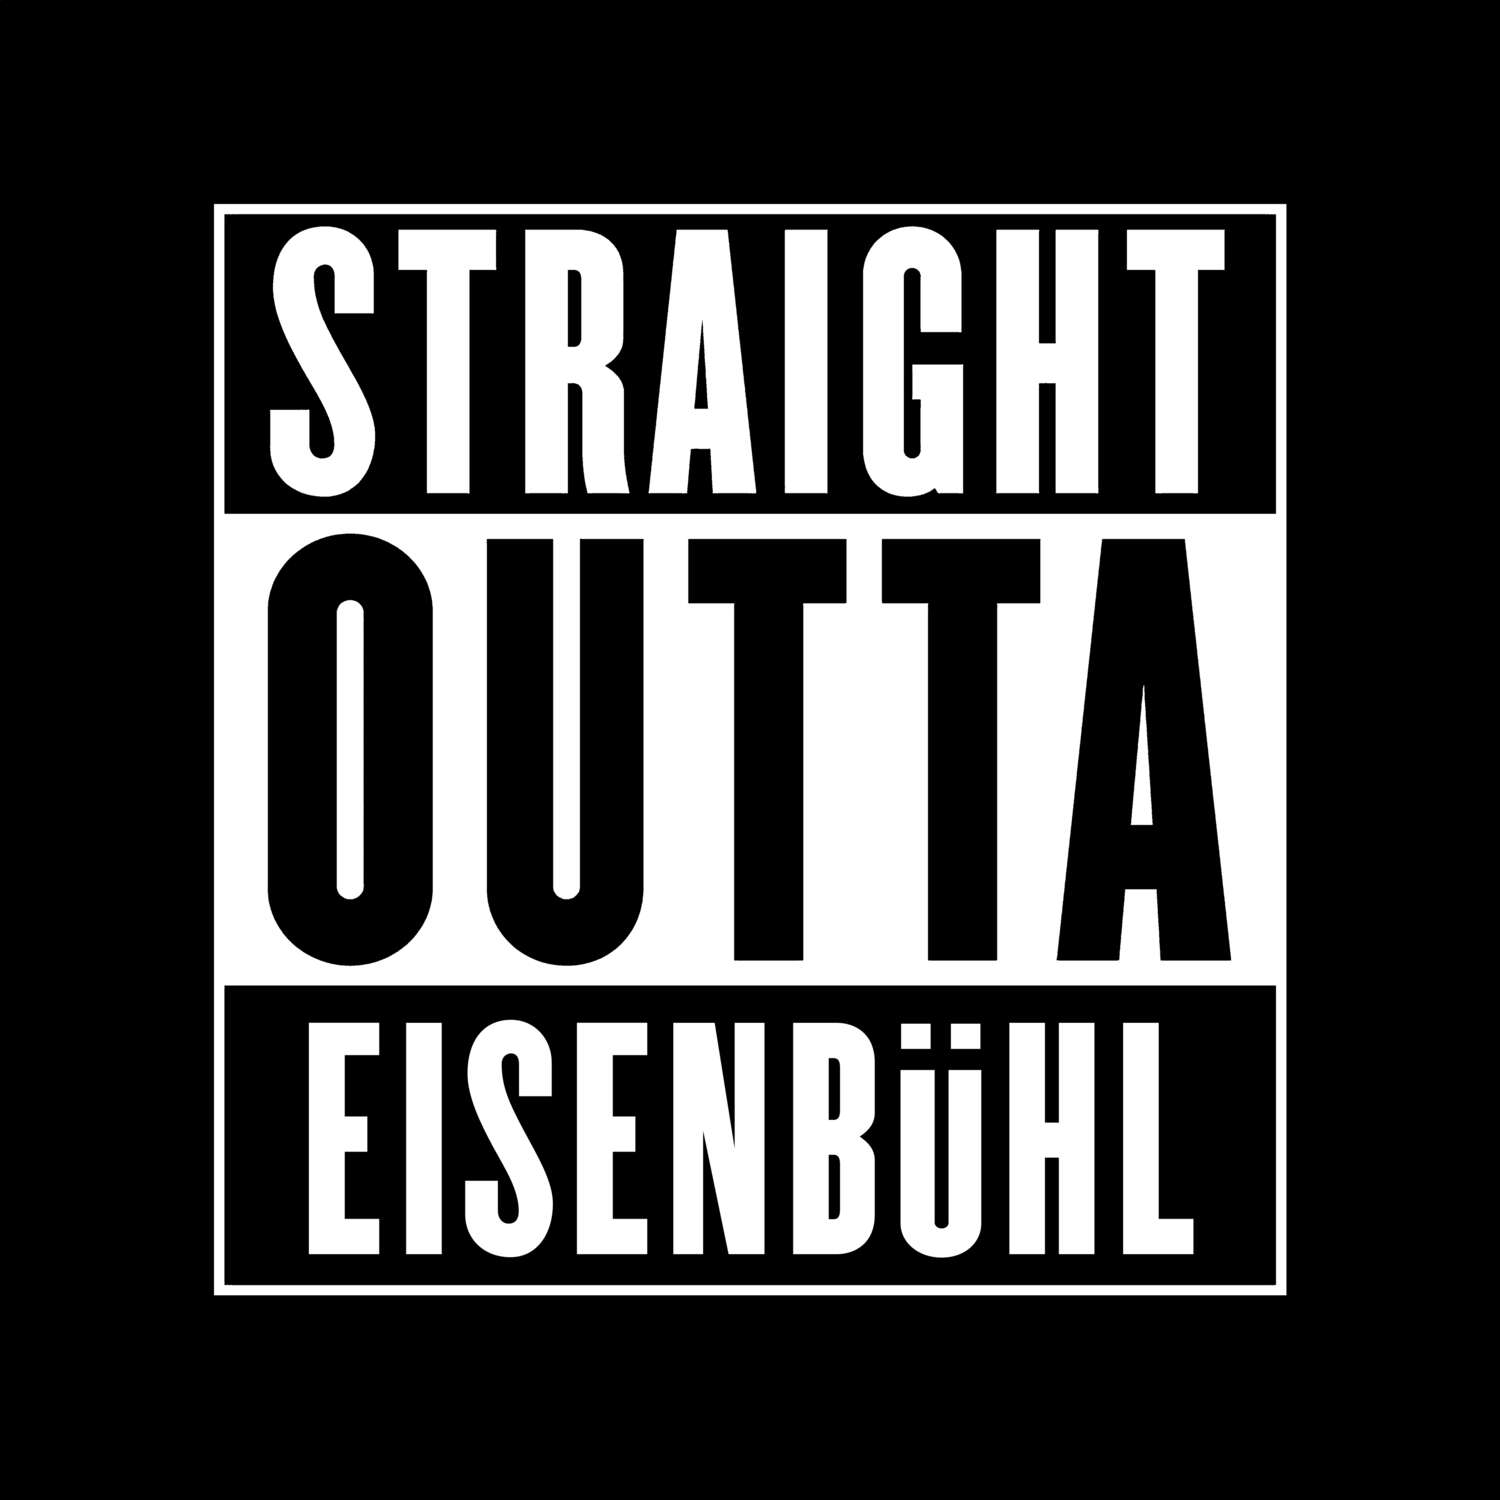 Eisenbühl T-Shirt »Straight Outta«